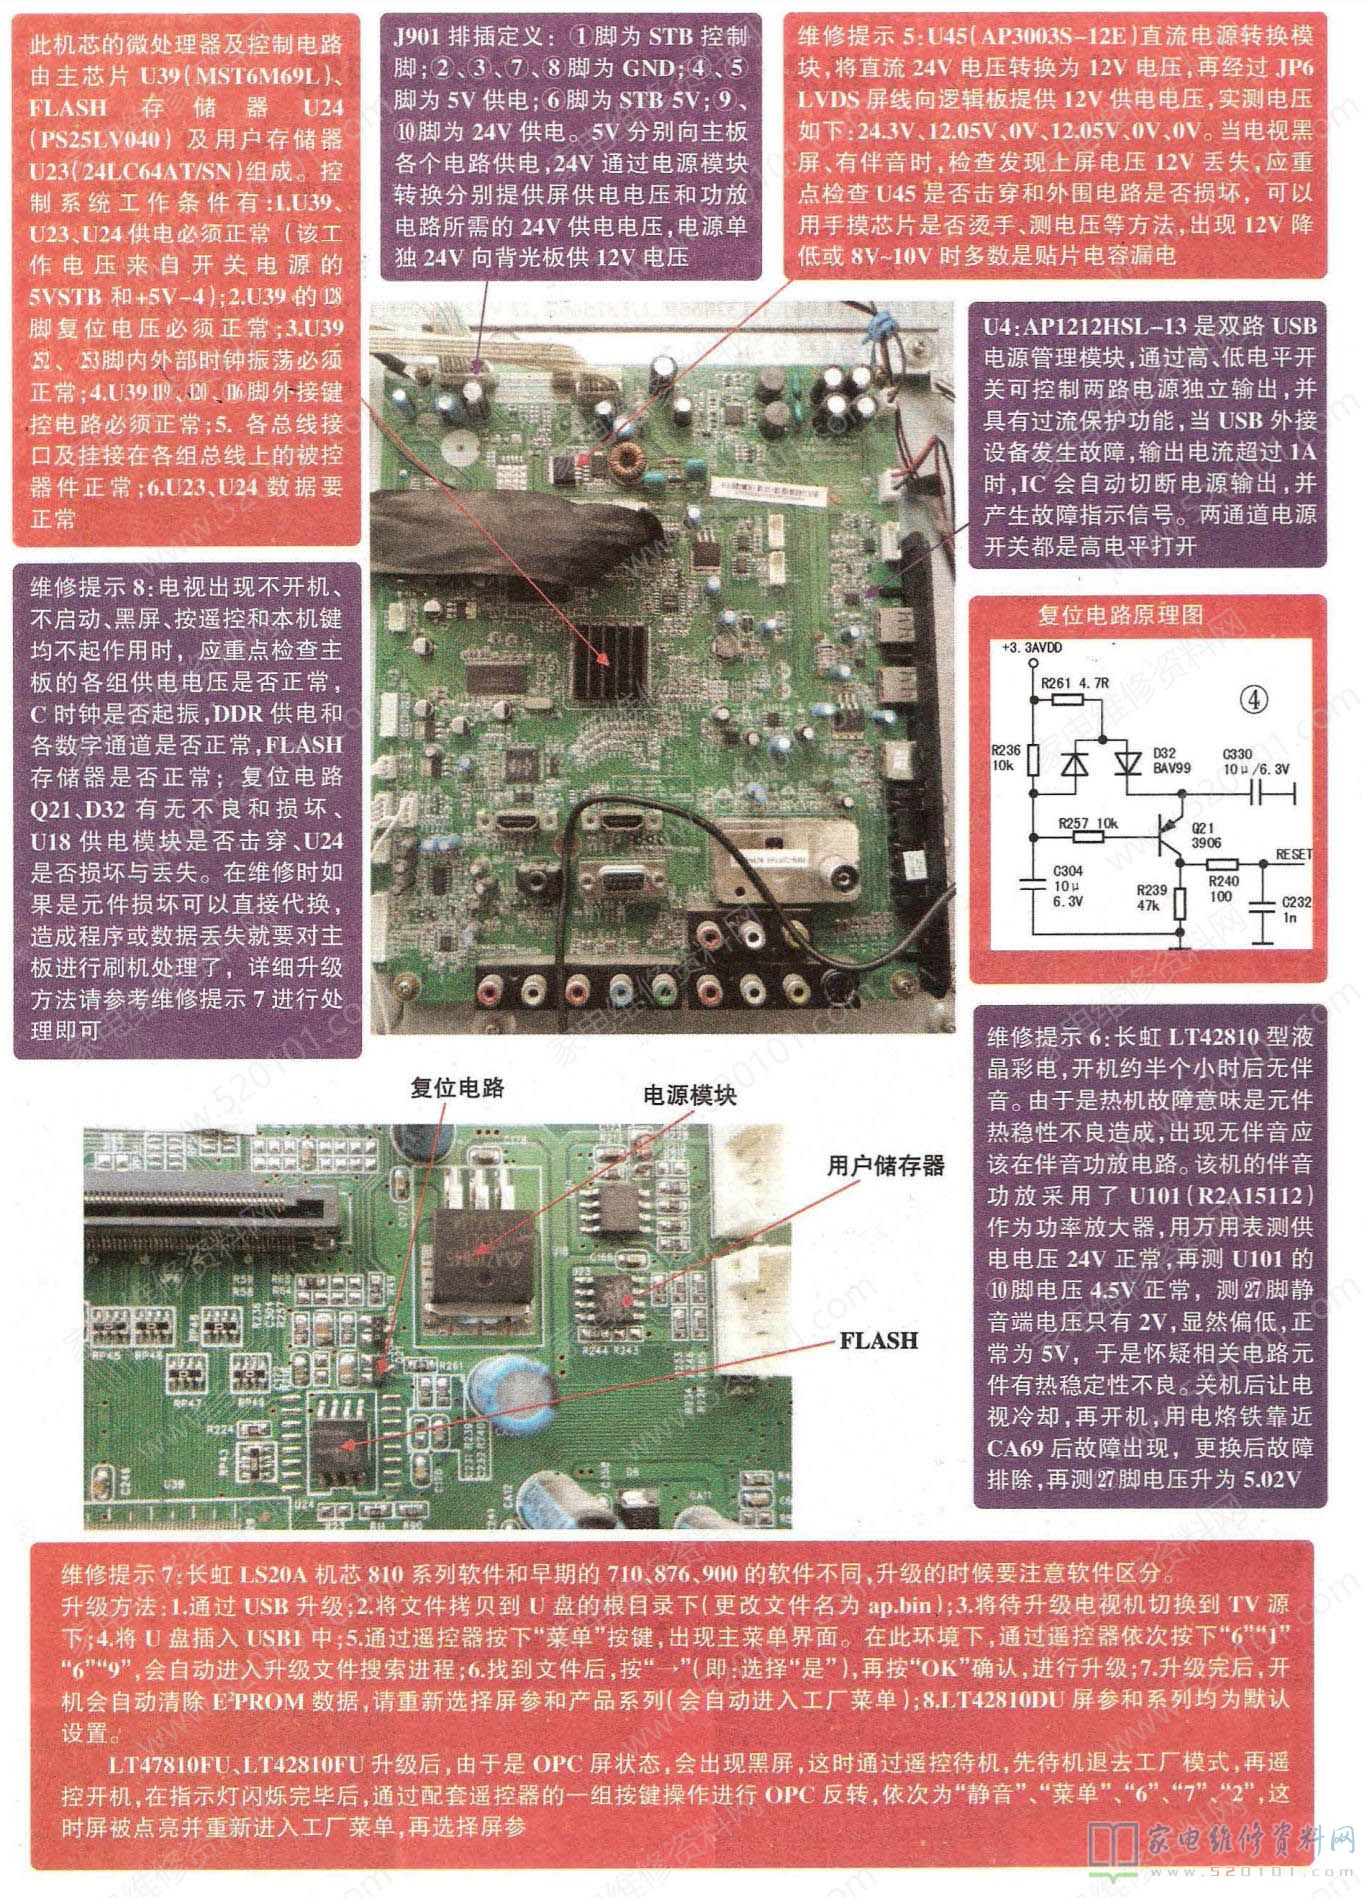 长虹LS20A机芯液晶电视主板故障维修图解 第2张